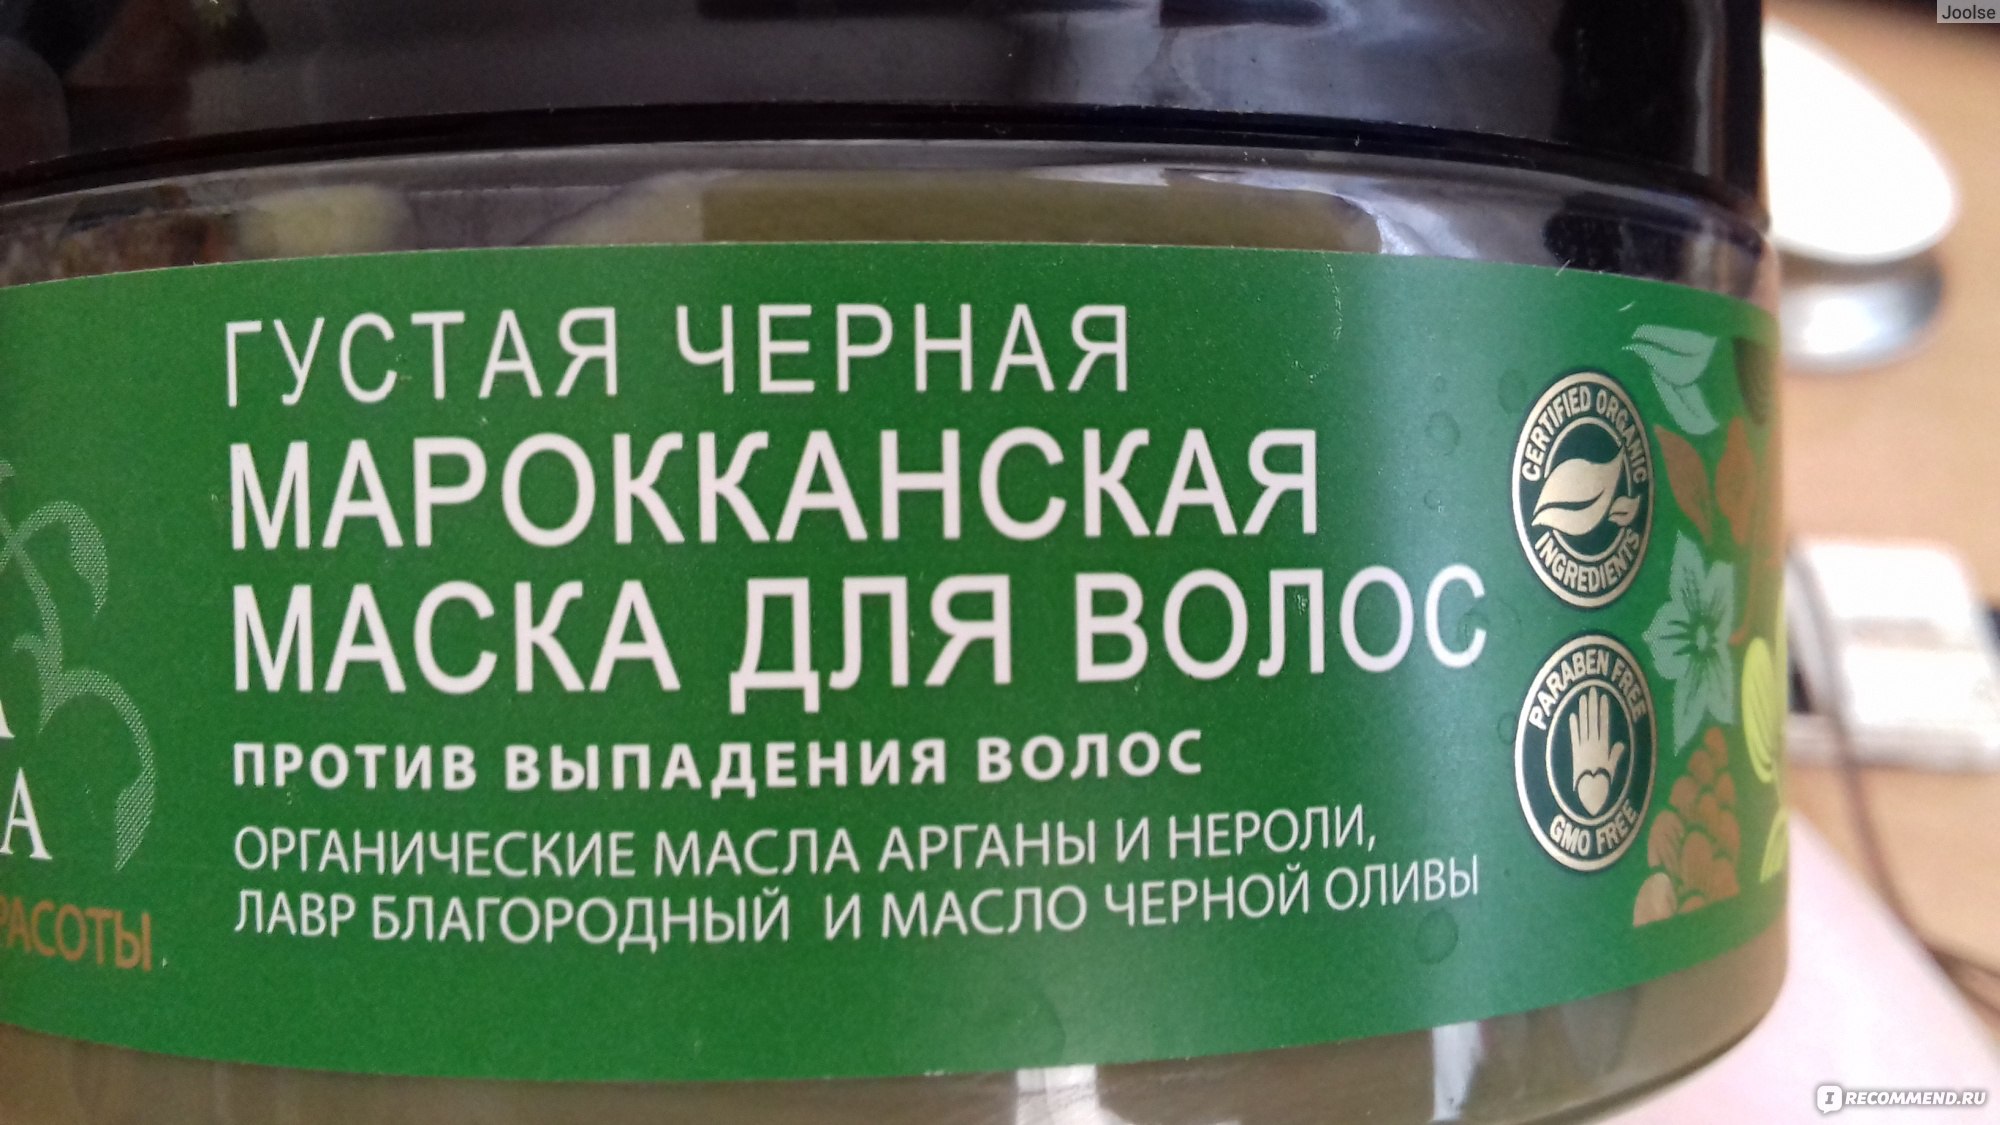 Planeta organica маска для волос 300мл белорусское молоко